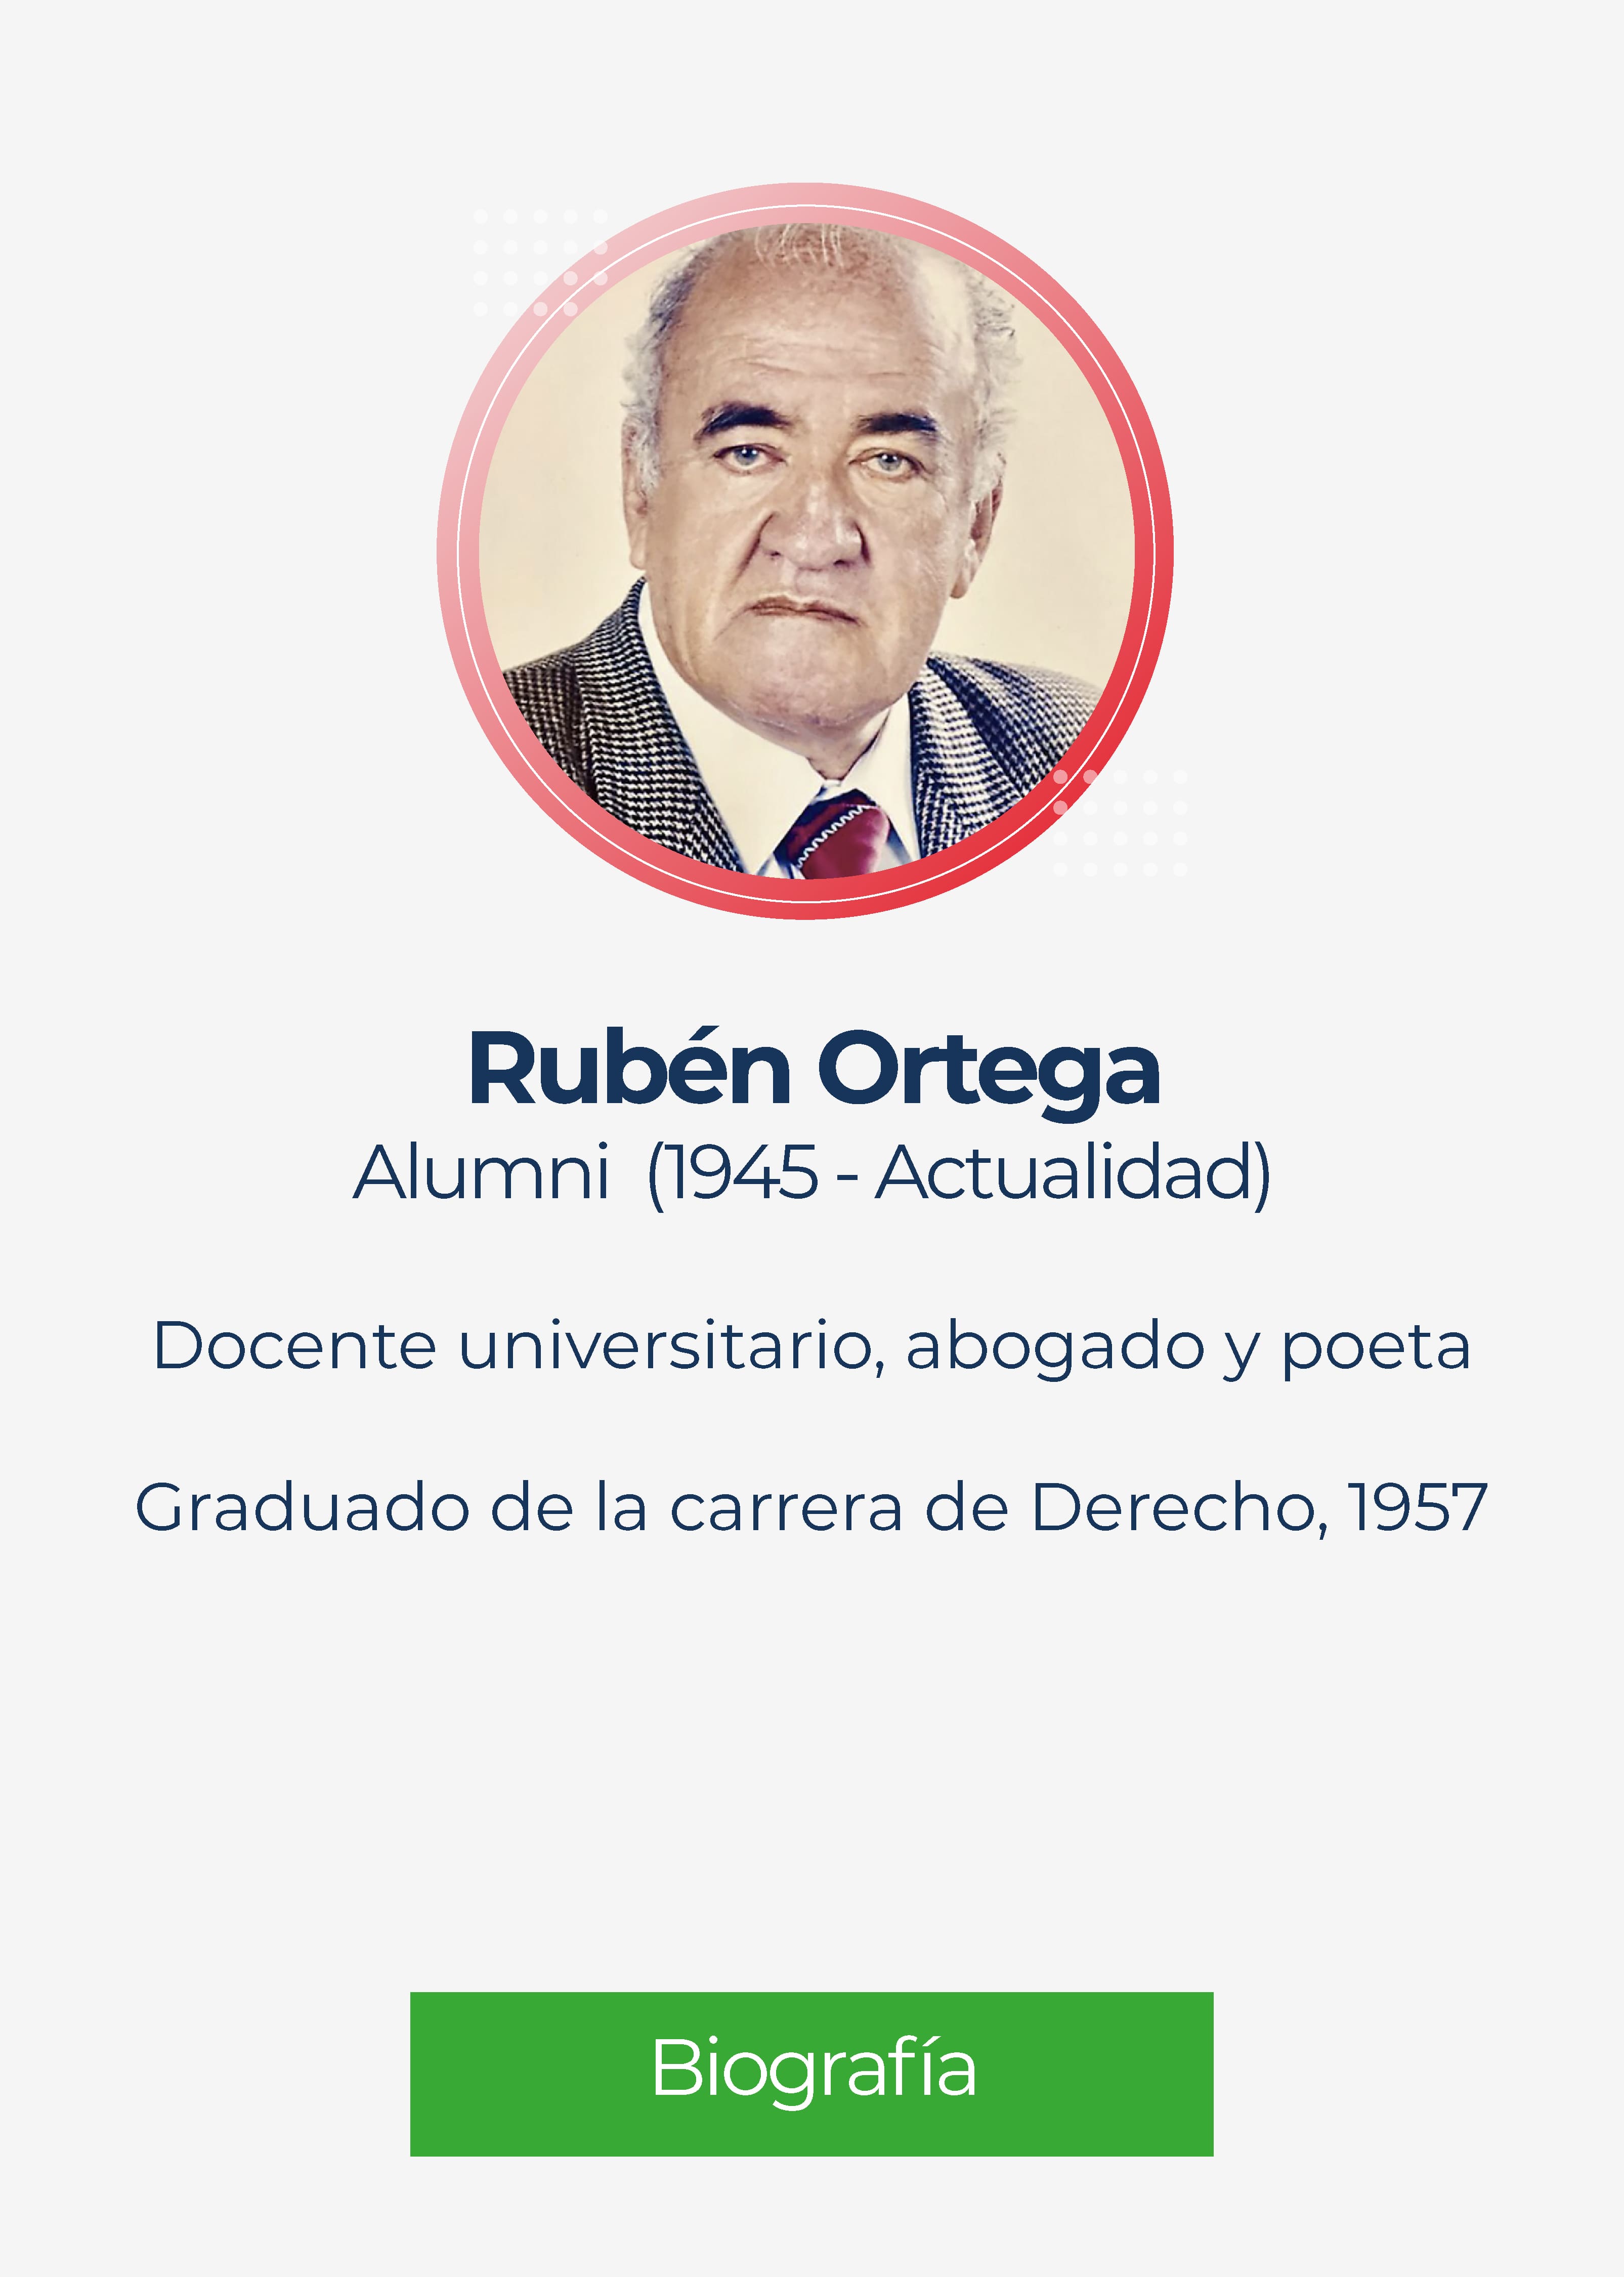 Ruben Dario Ortega Jaramillo